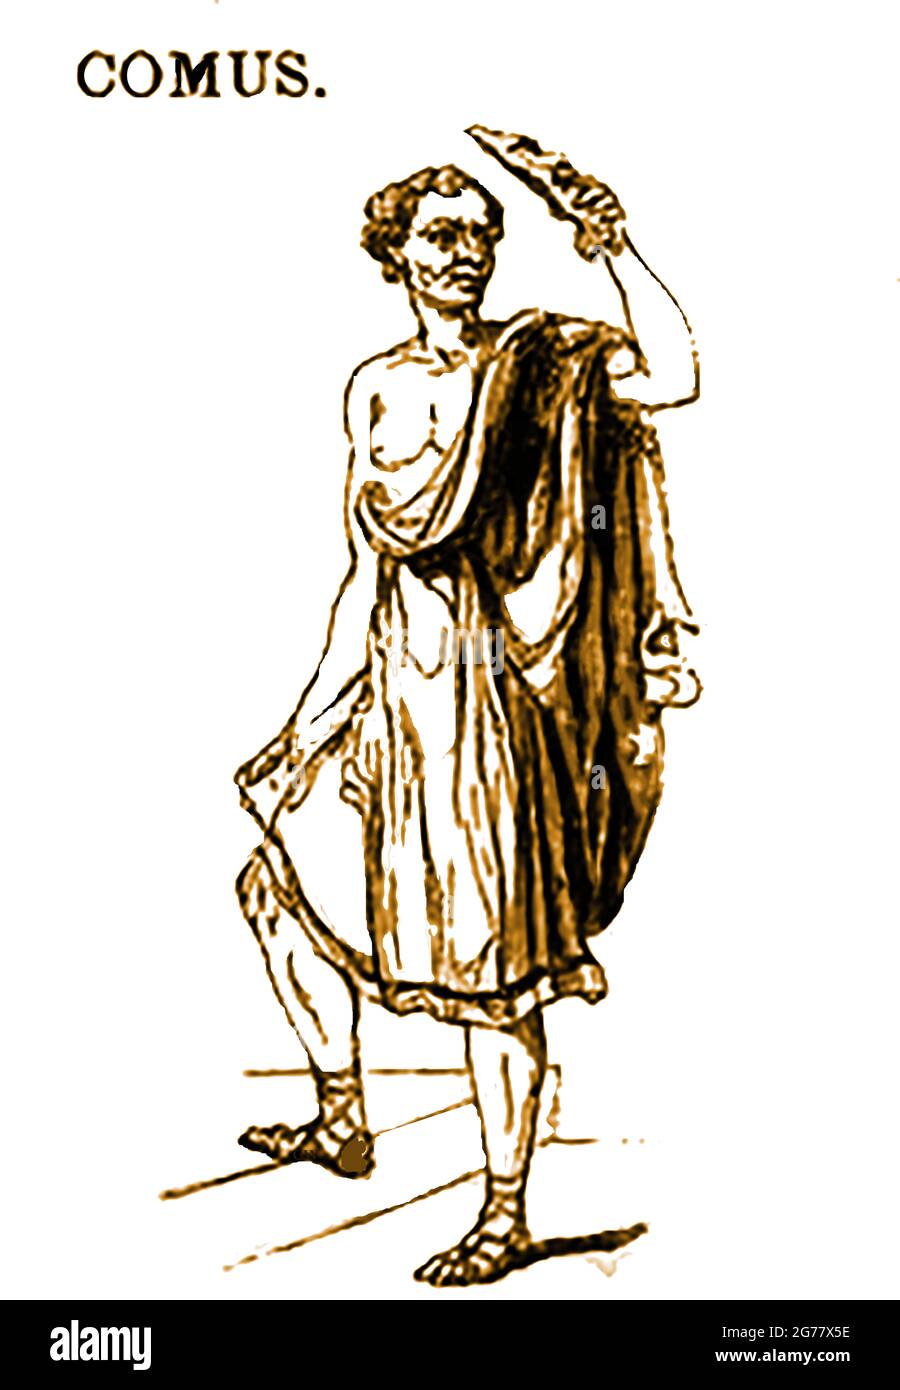 Eine Darstellung der griechischen mythologischen Figur Comus (Κῶμος) aus dem Jahr 1839, dem berauschten gott der Festlichkeiten, Schwelgen und nächtlichen Aktivitäten. Wenn er als geflügelter Jugendlicher oder kindähnlicher Satyr dargestellt wird, symbolisiert er Anarchie und Chaos. Comus kann auch als paralytischer Trunkener dargestellt werden. Er ist im Wesentlichen ein gott des Überschusses und wird oft gezeigt (wie hier und manchmal mit einem Blumenkranz auf dem Kopf), eine Fackel, die heruntergelassen wird, zu tragen. Er hat Verbindungen (aber nicht direkt) mit anderen fleischlichen oder berauschten Göttern wie Pan und Dionysus. Stockfoto